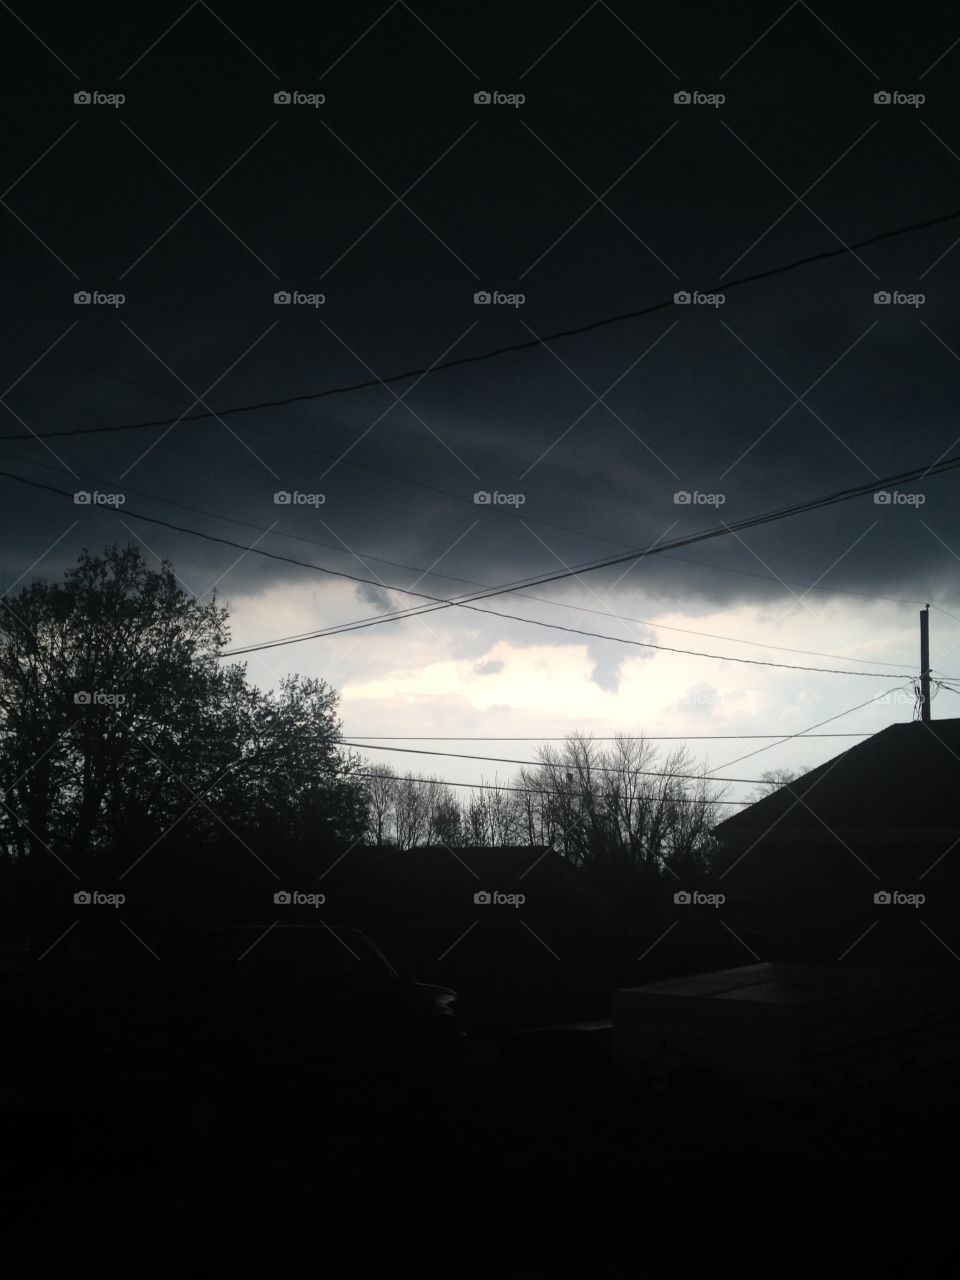 Storm clouds. Traer Iowa. 